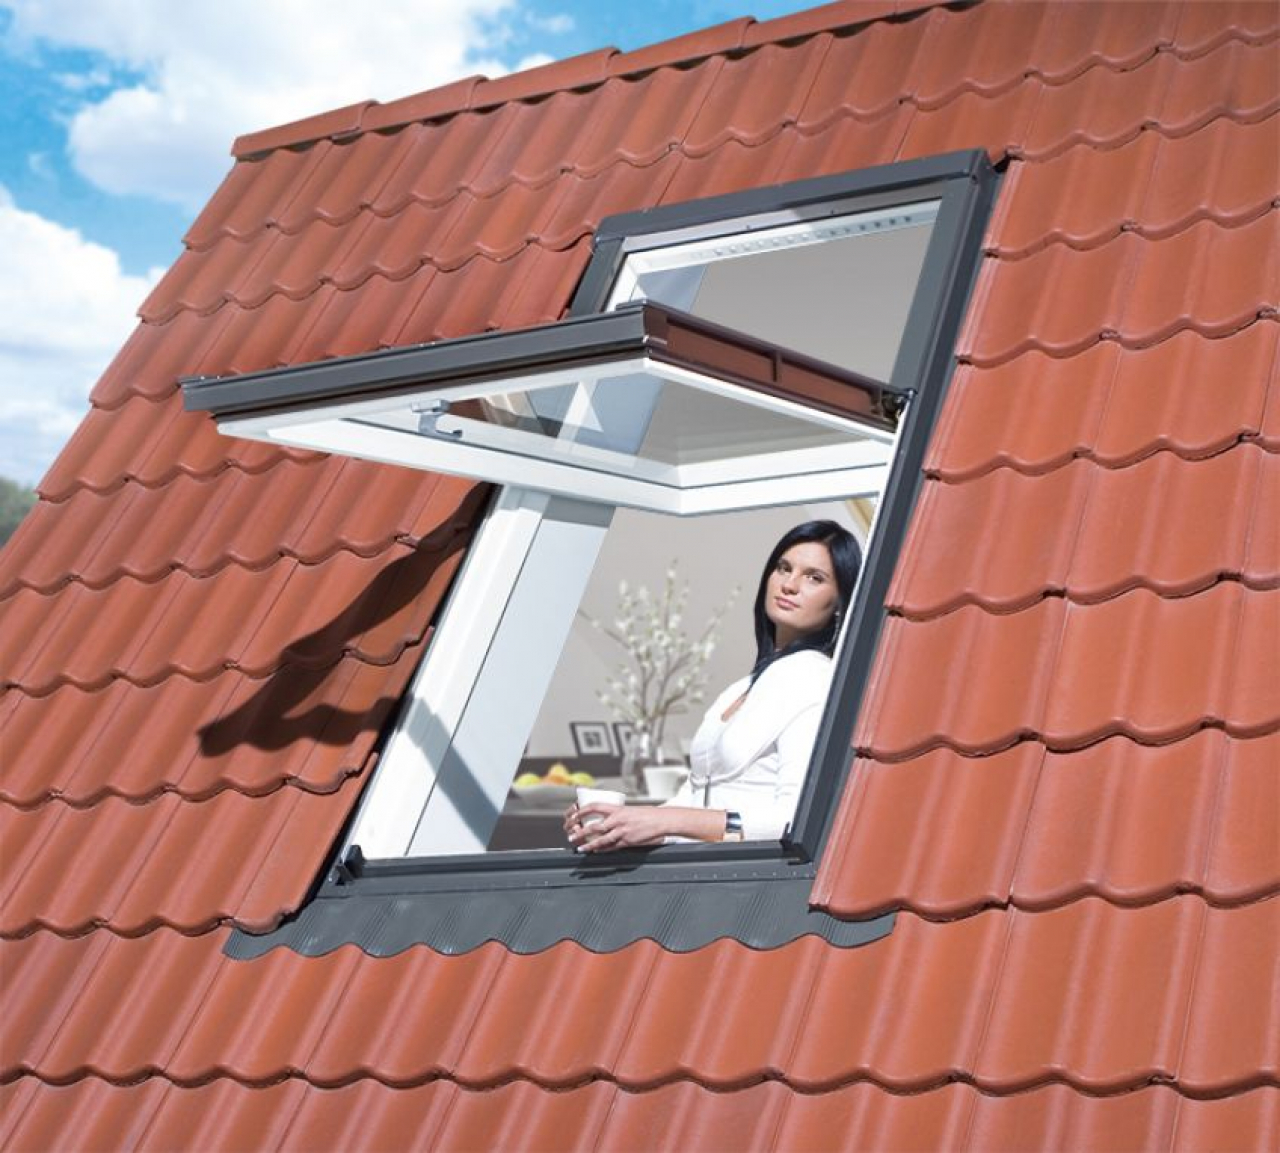 Fakro FYP-V U5 proSky Megemelt forgástengelyű tetőtéri ablakok